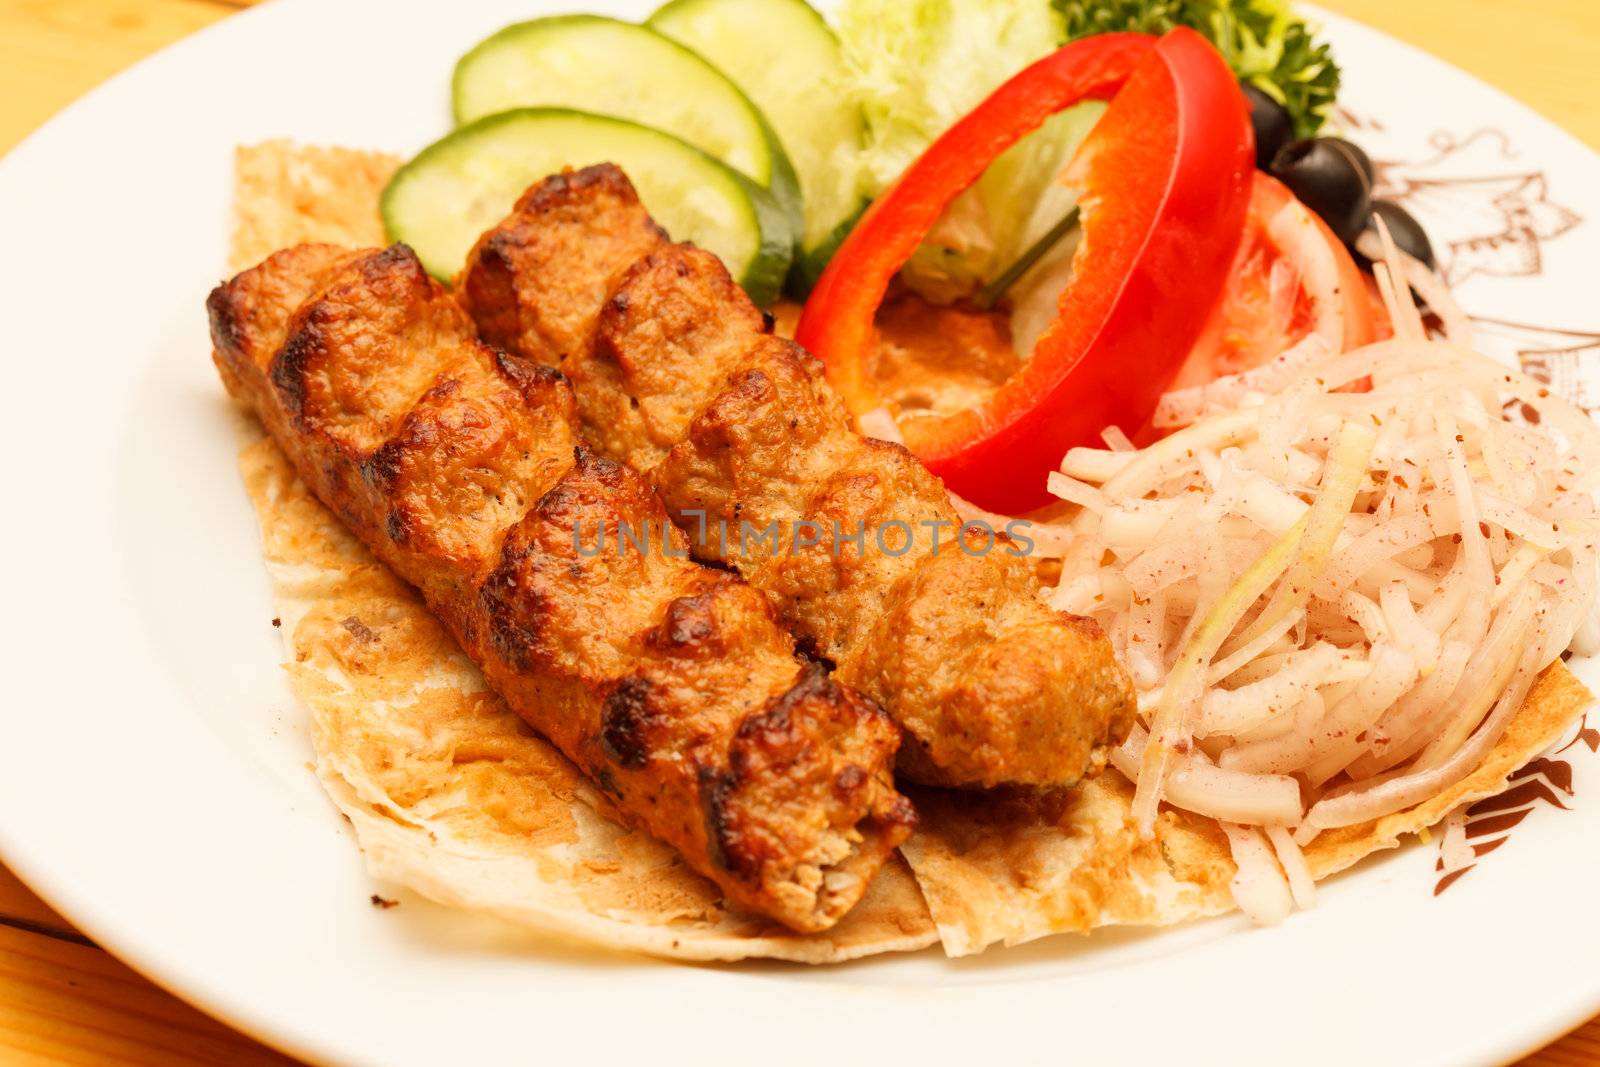 kebab with vegetables